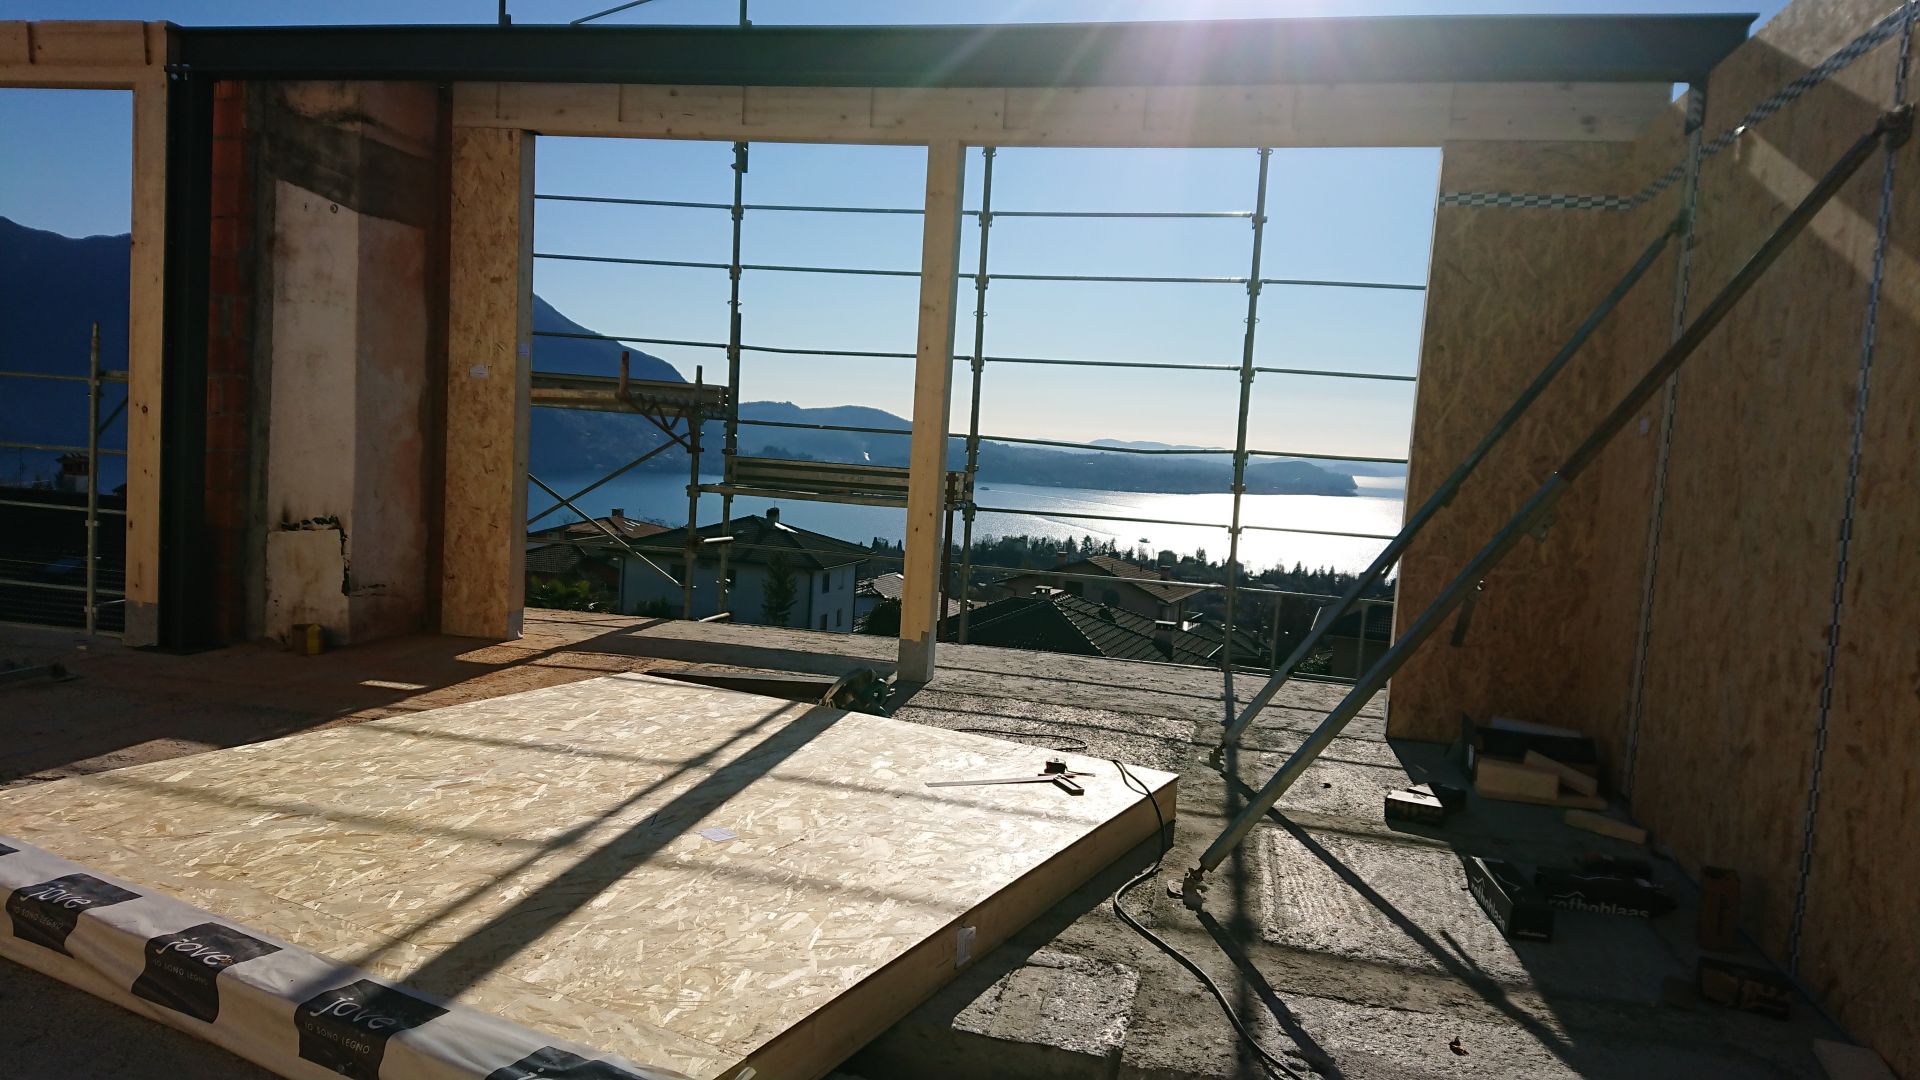 Sopralzo in legno di edificio residenziale al secondo piano Arizzano (VB) realizzato da Lino Ferro Architetto, Assistenza tecnica a Oleggio